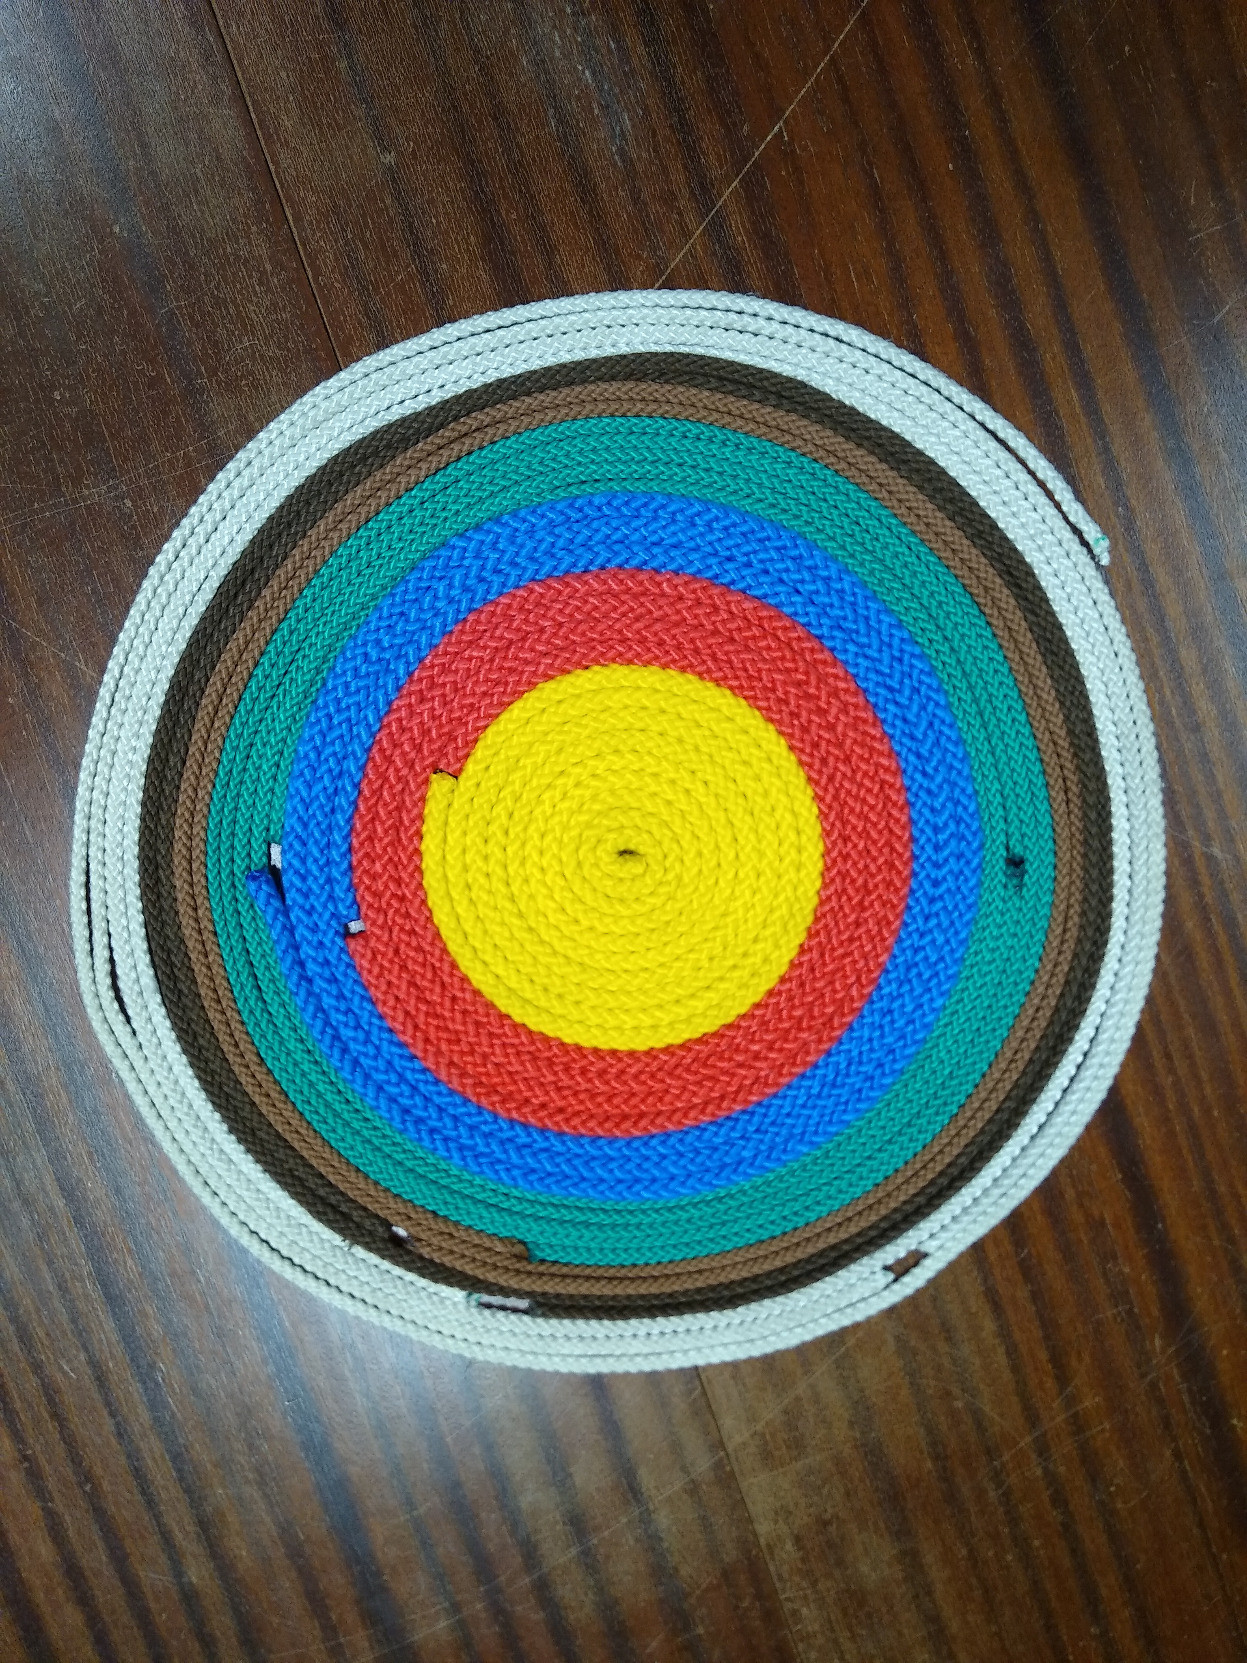 Farbige Seile auf dem Tisch in einer bunten Spirale aufgerollt.